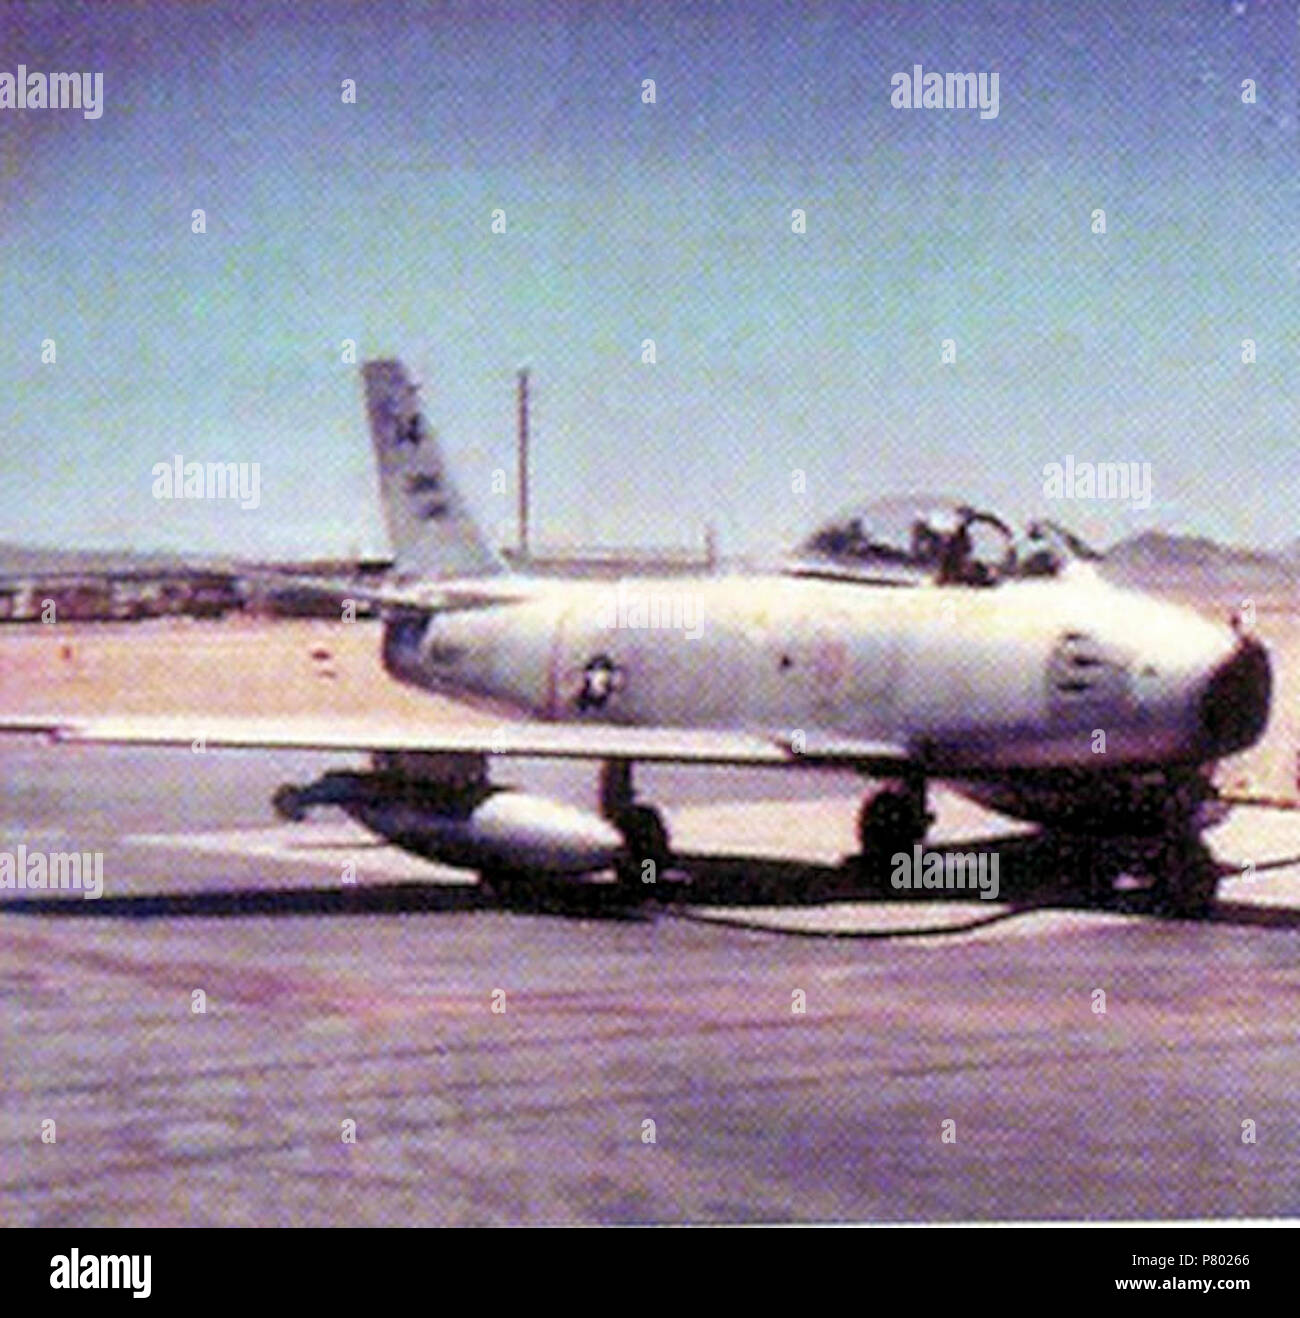 4477Th la prova e la valutazione squadrone - F-86 Sabre. Foto Stock